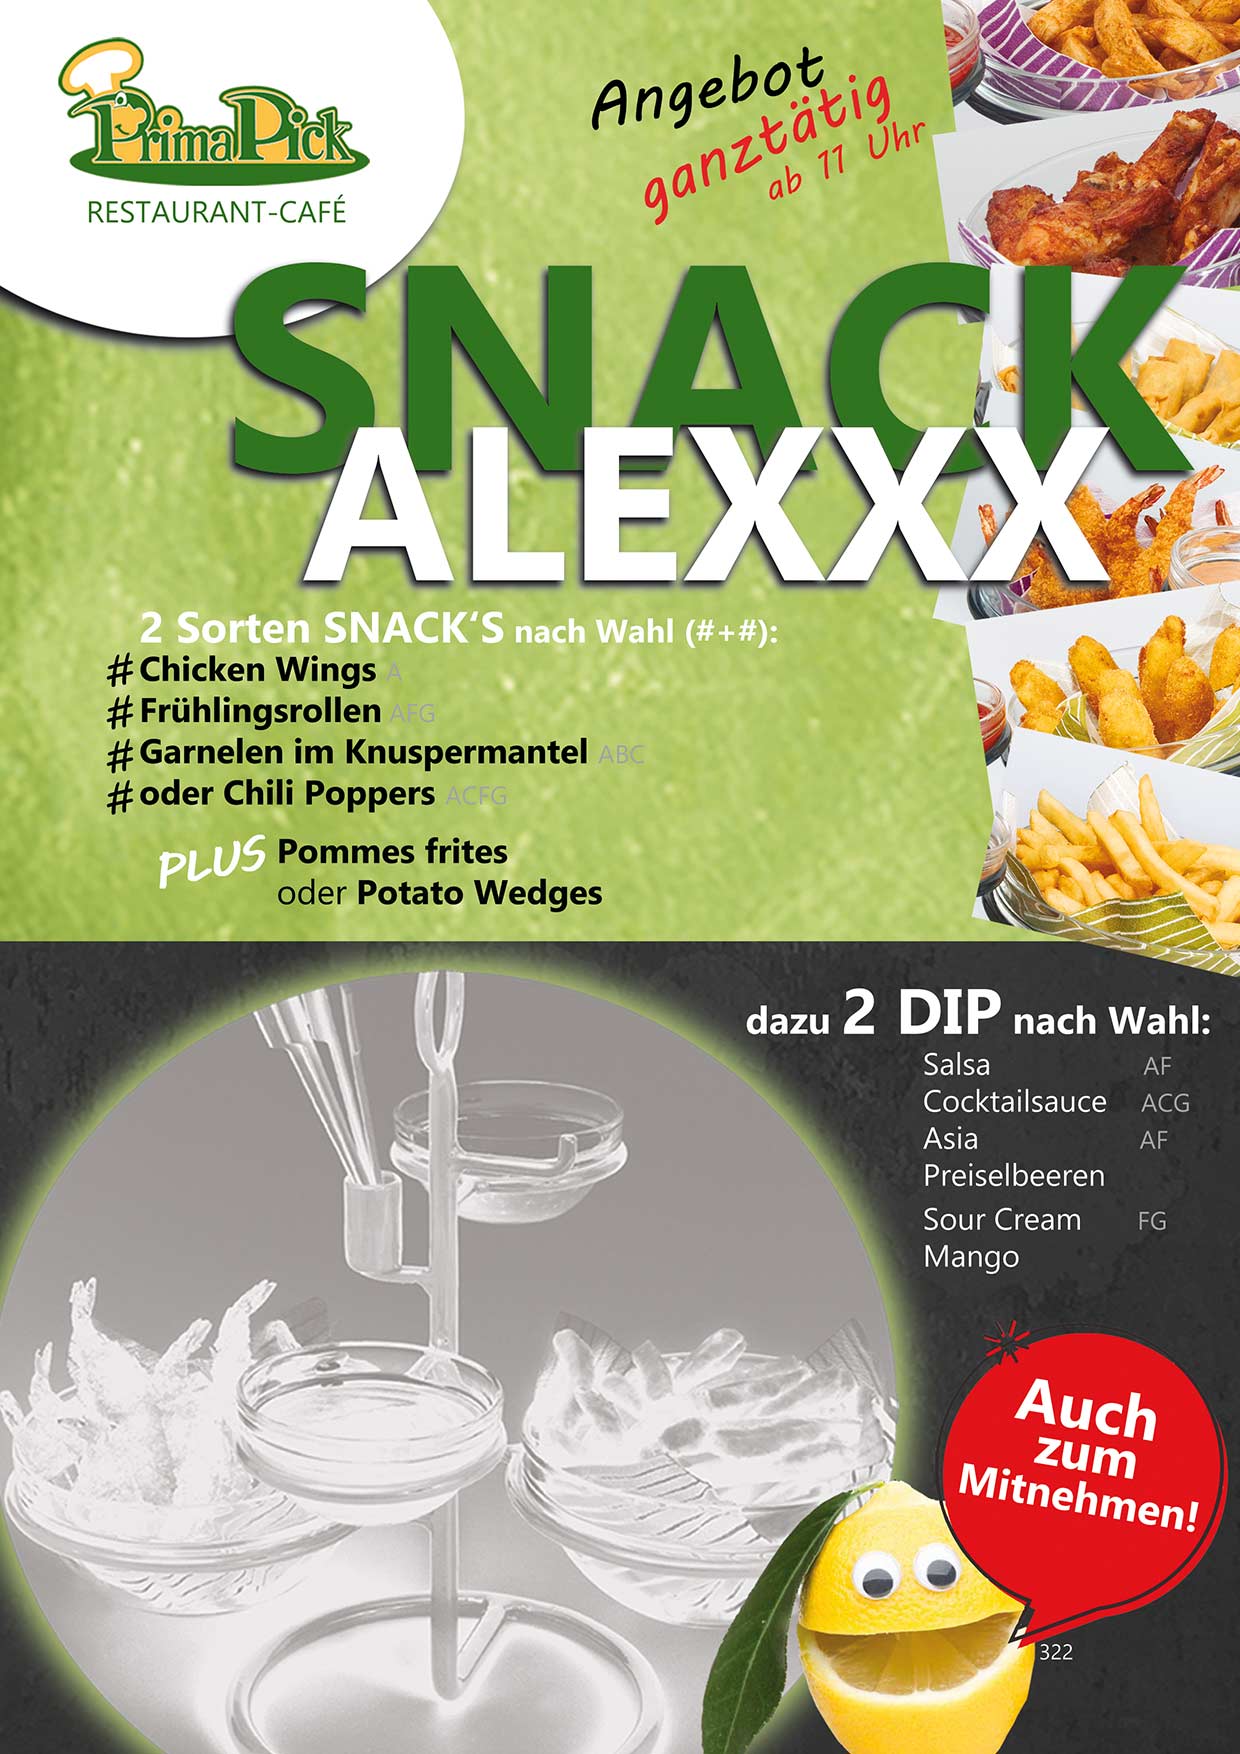 Alexxx Snack im Prima Restaurant Kufstein